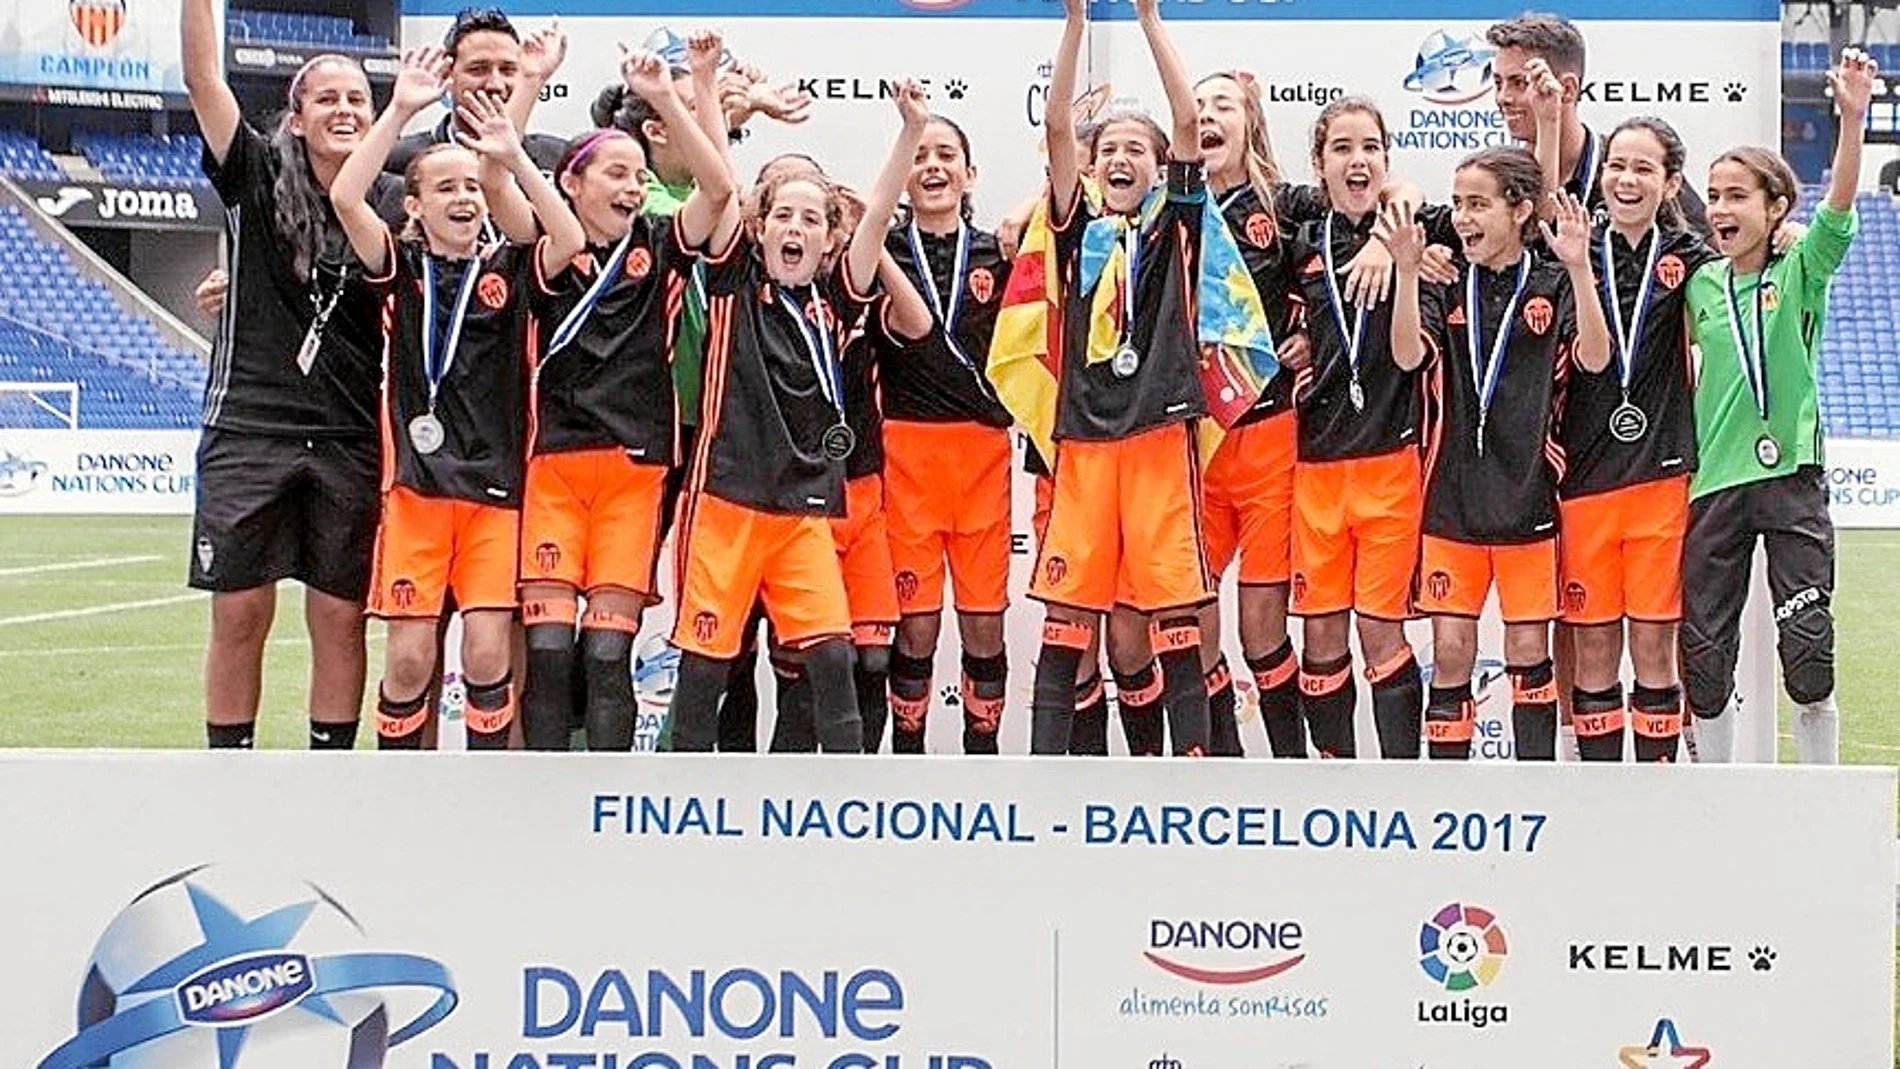 Las chicas del Valencia, triunfadoras. Por primera vez se incluyó el torneo femenino, y el Valencia venció al Espanyol por 3-2